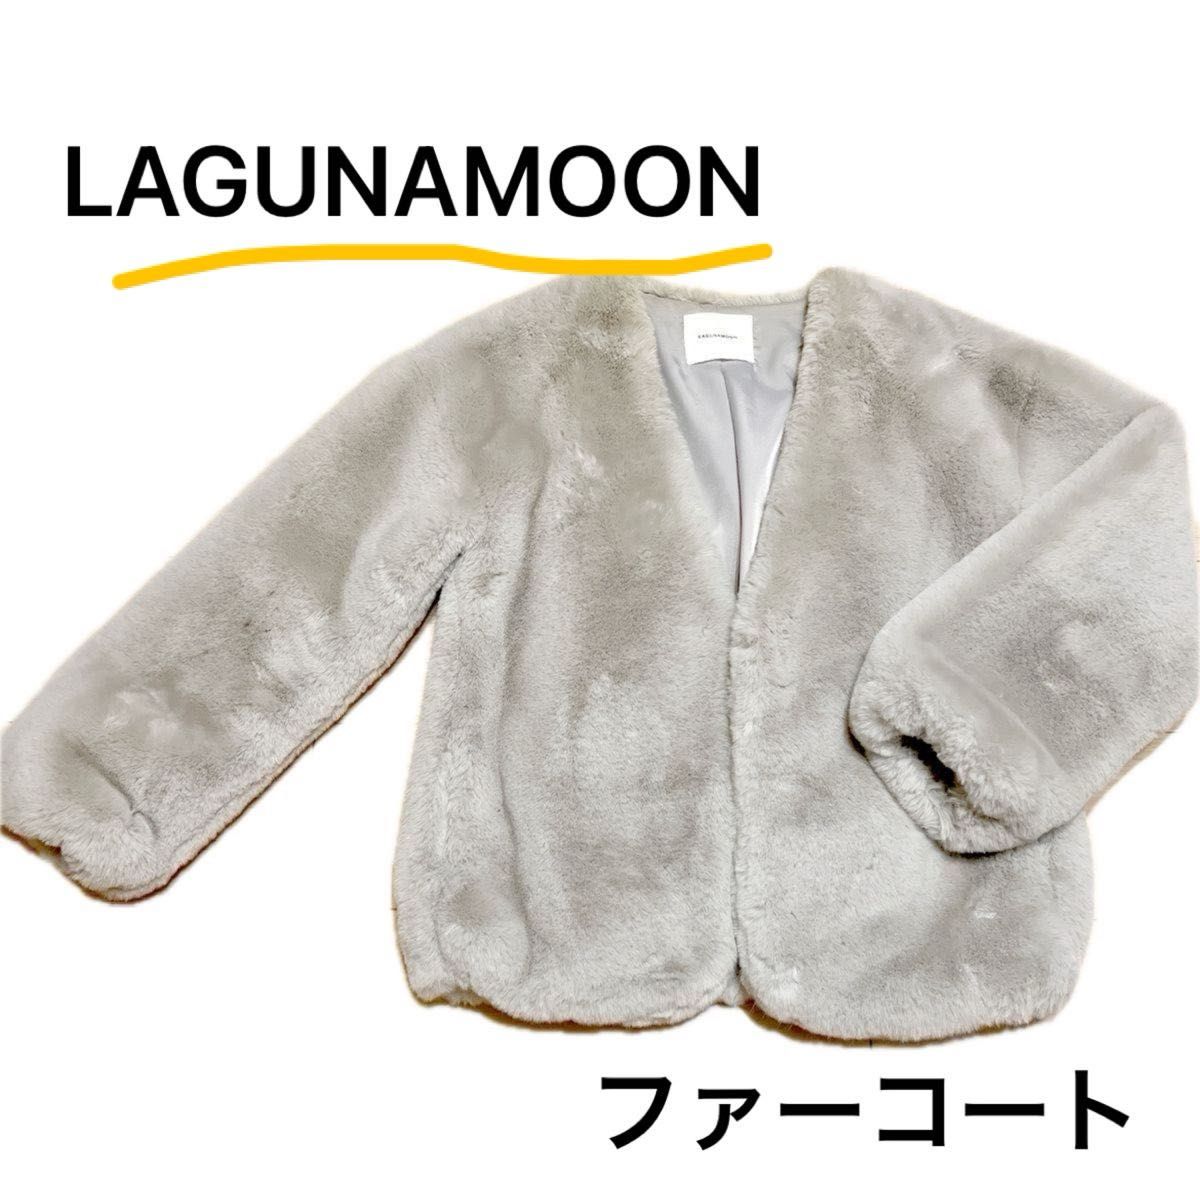 【高級感】LAGUNAMOON ファーコート  アウター コート ファー 長袖 ジャケット